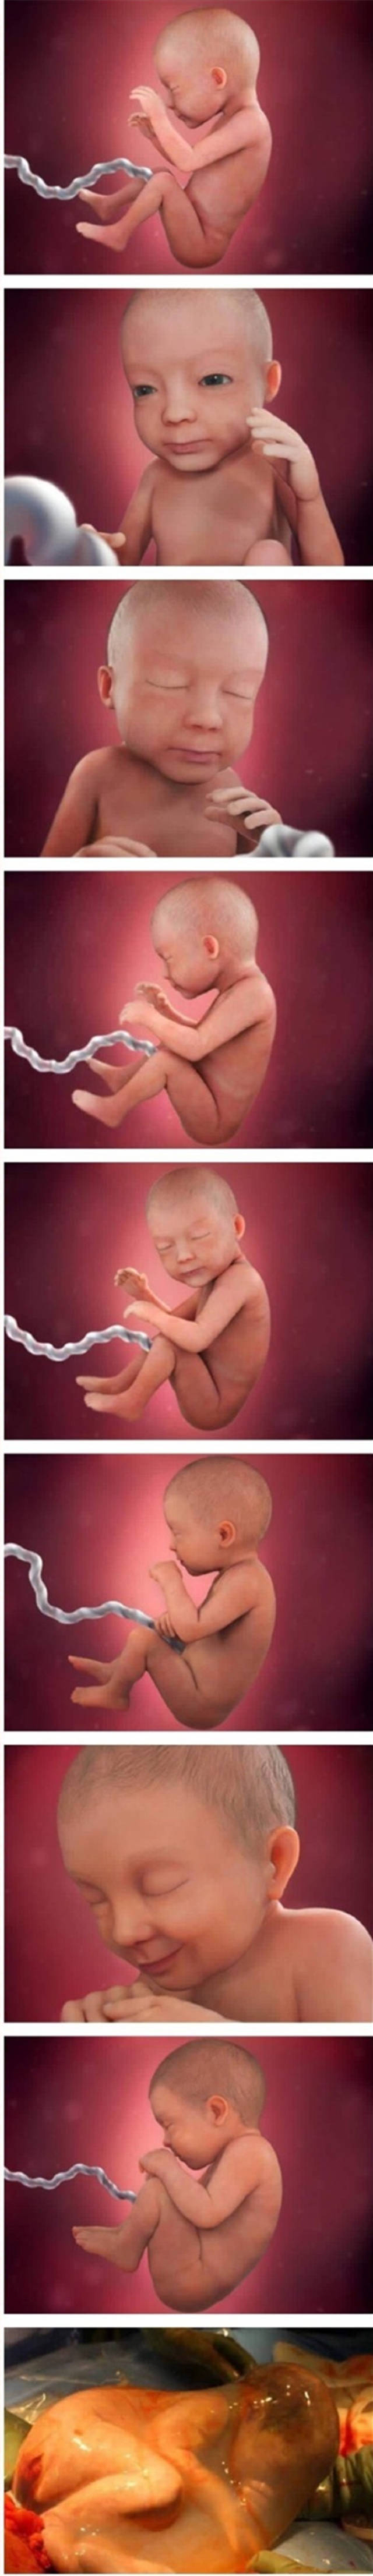 30张高清图片展示宝宝从胚胎到出生的发育全过程,不得